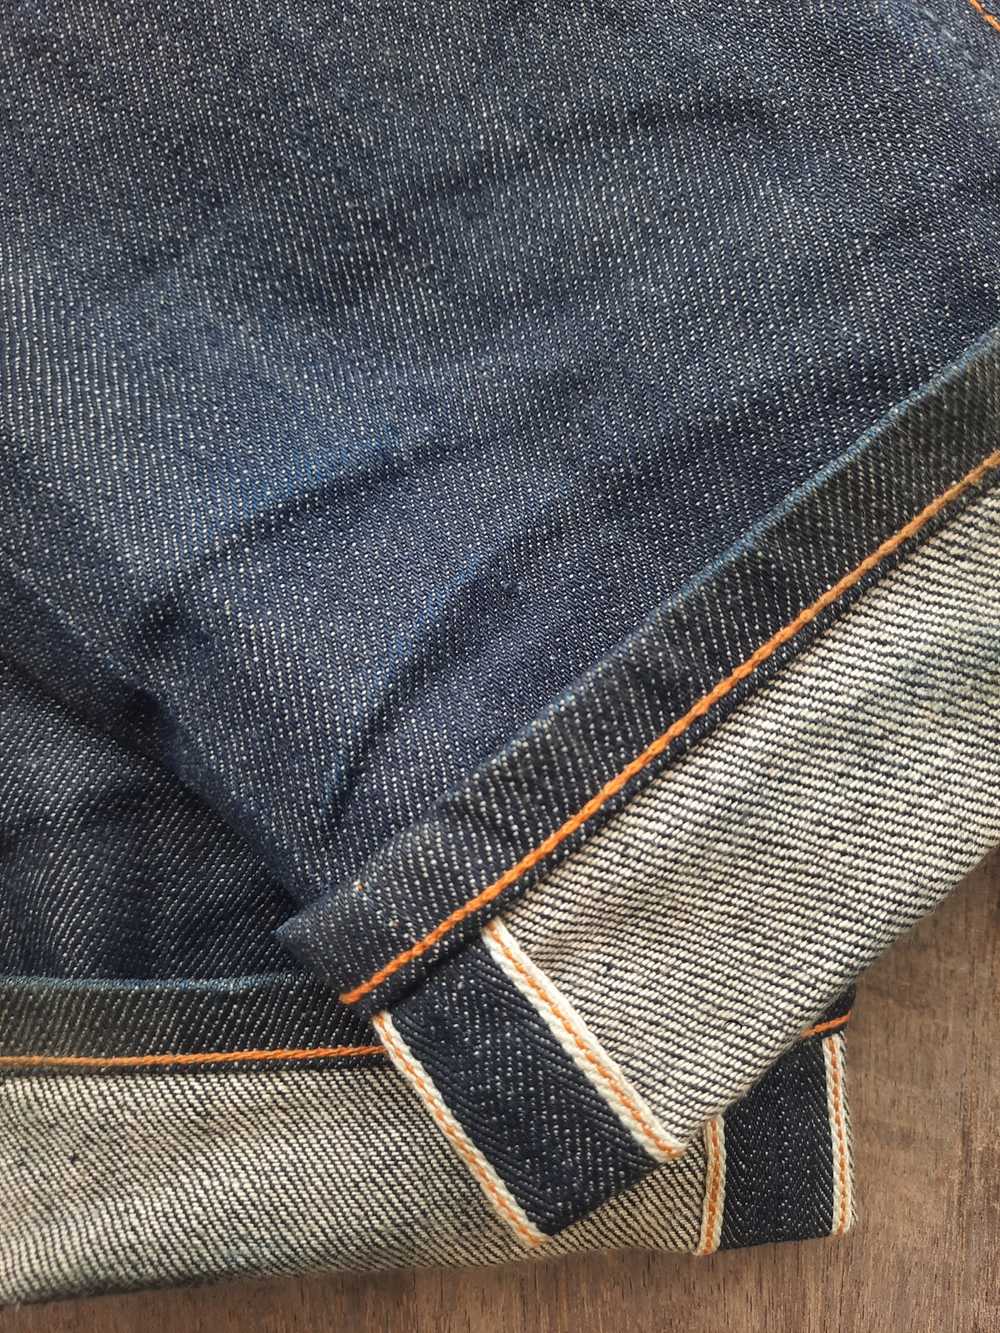 Nudie Jeans × Streetwear Nudie jeans thin finn dr… - image 6